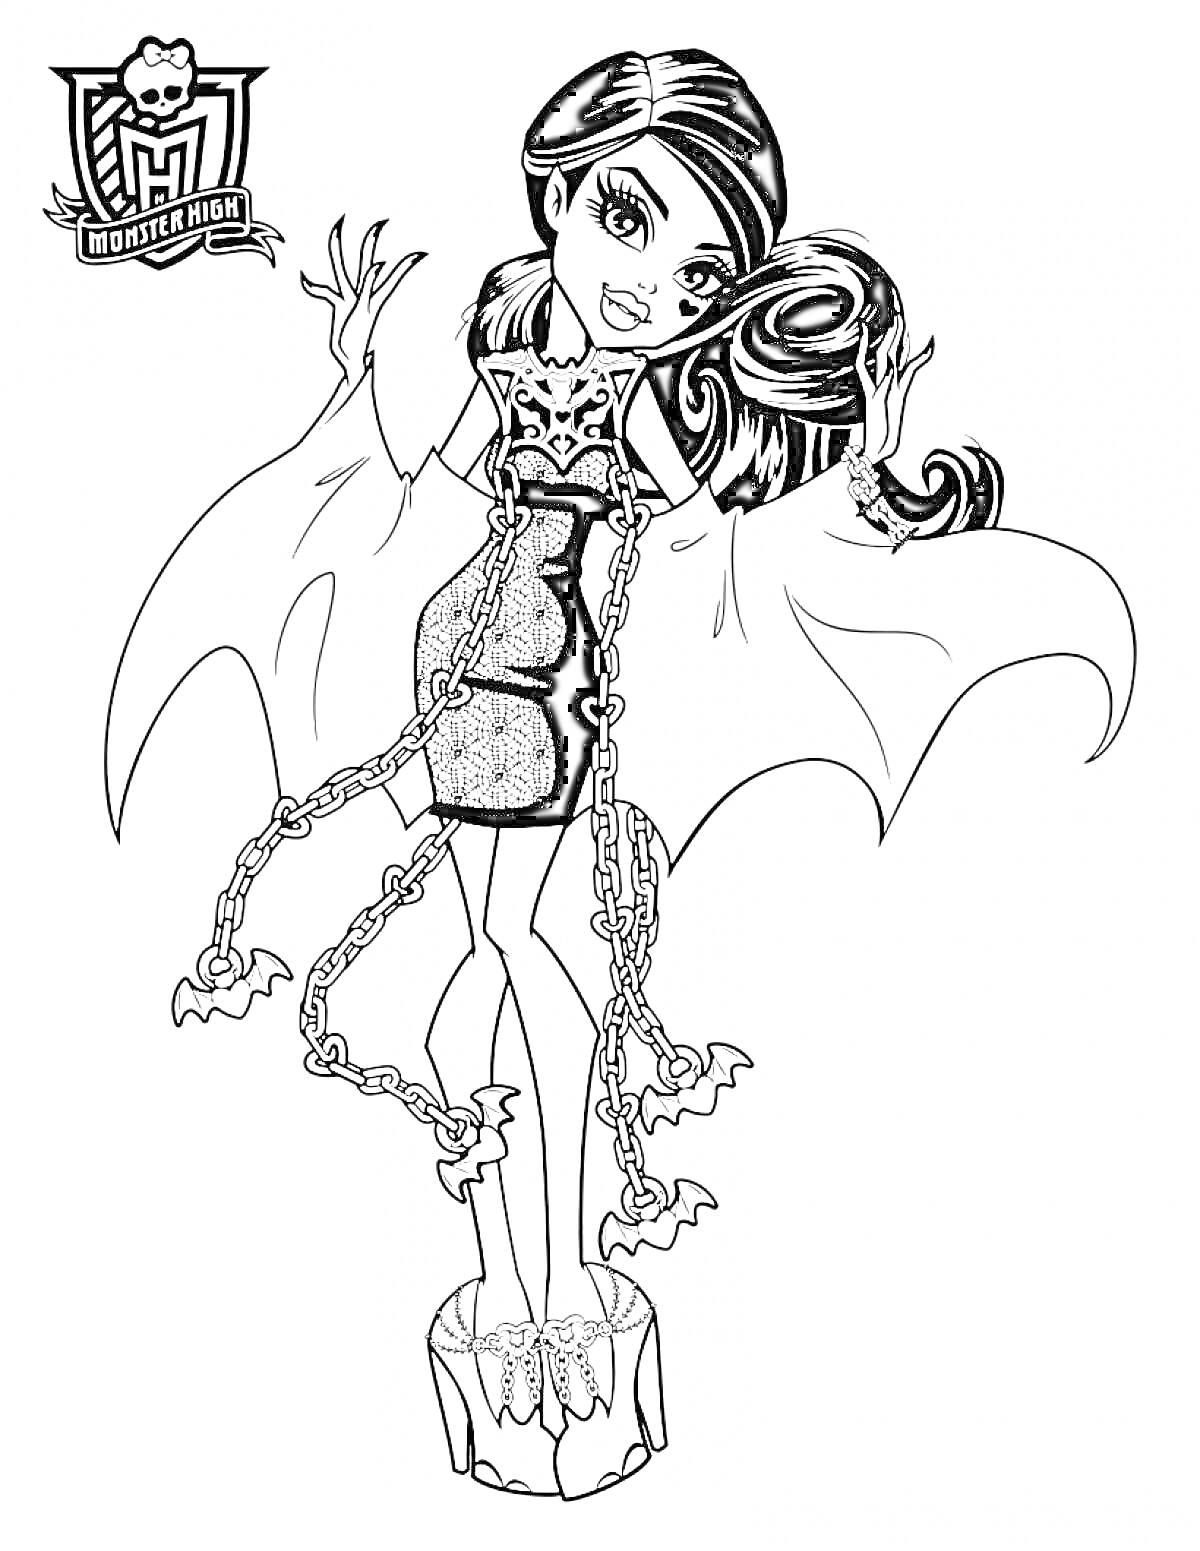 Раскраска Девушка с длинными волосами в платье с цепями и крыльями, стоящая на платформе с цепями и привидениями, Монстер Хай Призрачно